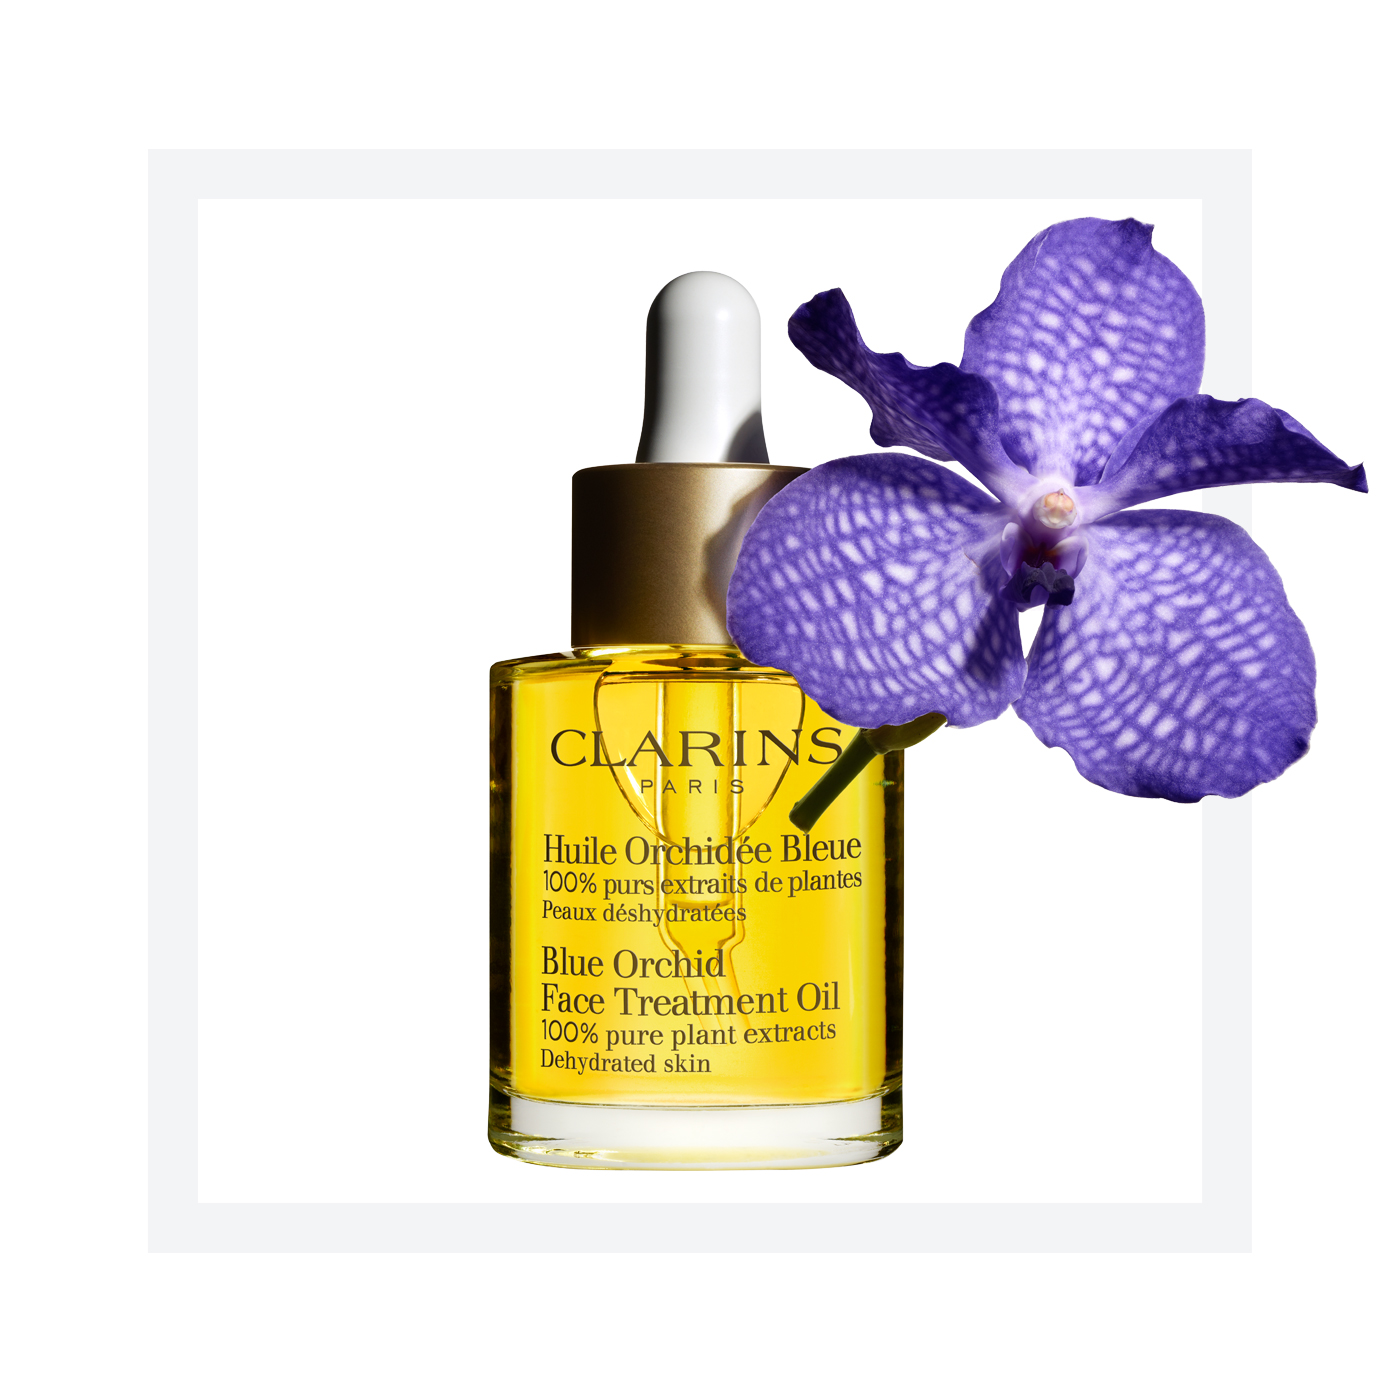 à¸à¸¥à¸à¸²à¸£à¸à¹à¸à¸«à¸²à¸£à¸¹à¸à¸�à¸²à¸à¸ªà¸³à¸«à¸£à¸±à¸ Clarins Blue Orchid Face Treatment Oil